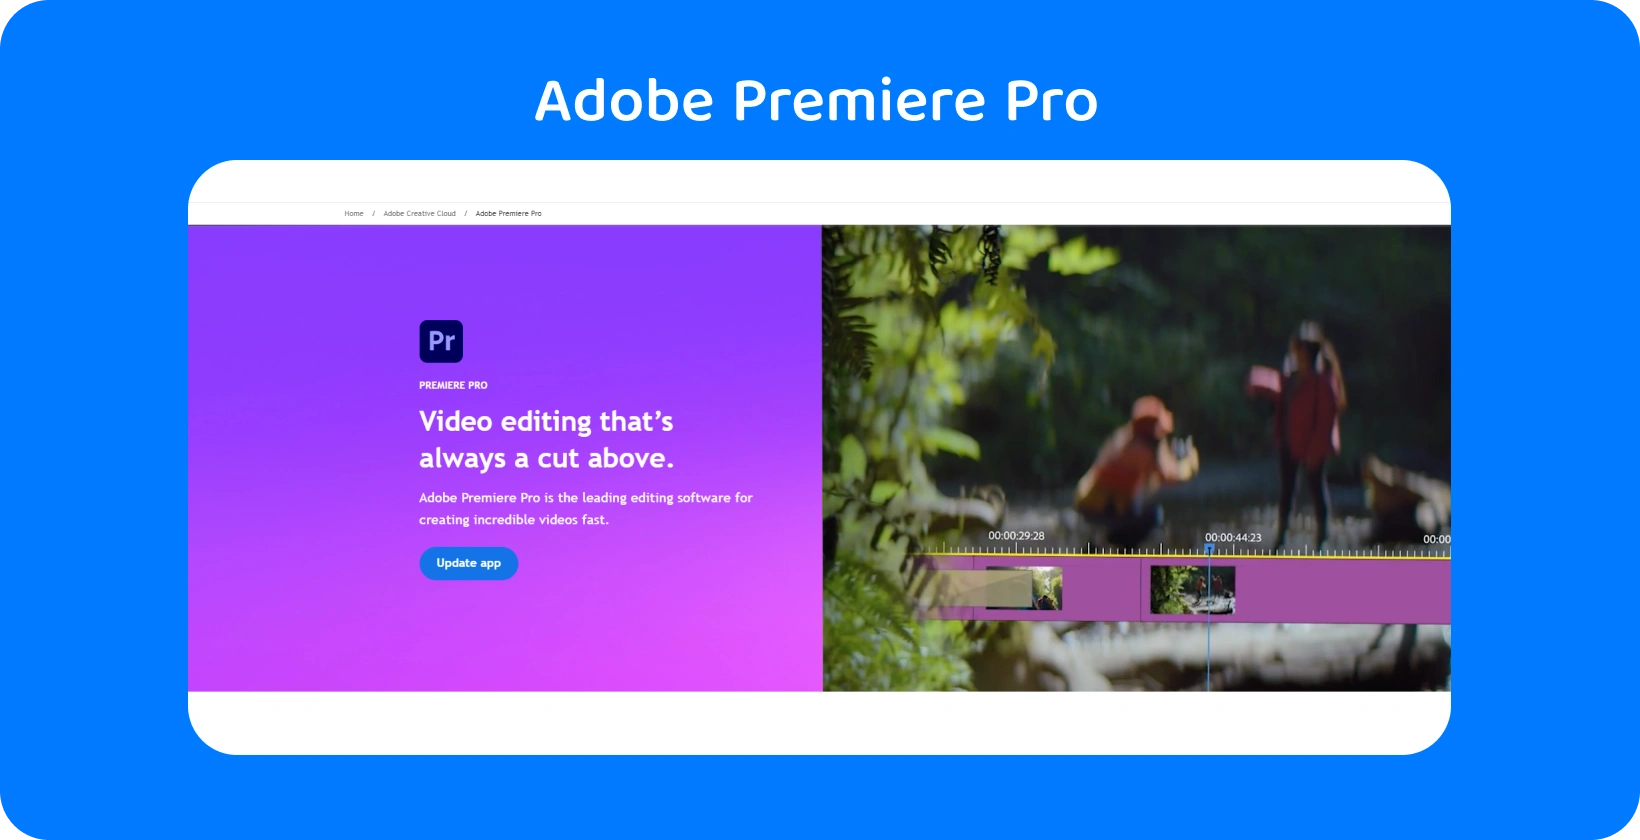 Adobe Premiere Pro 界面显示其高级视频编辑功能，非常适合快速、精确的编辑。